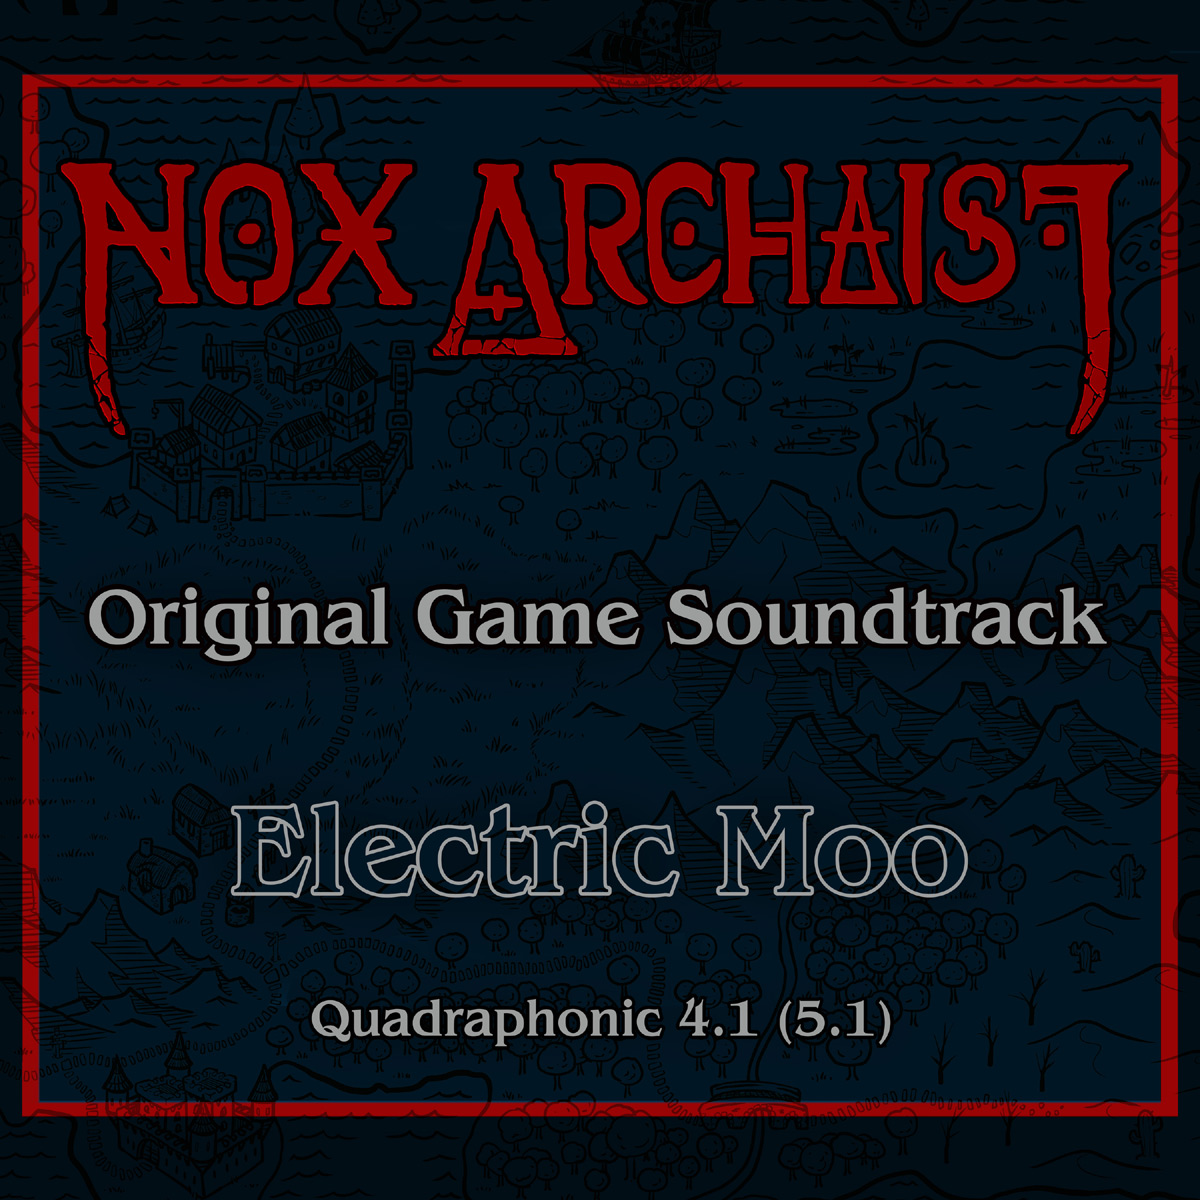 Nox Archaist album cover